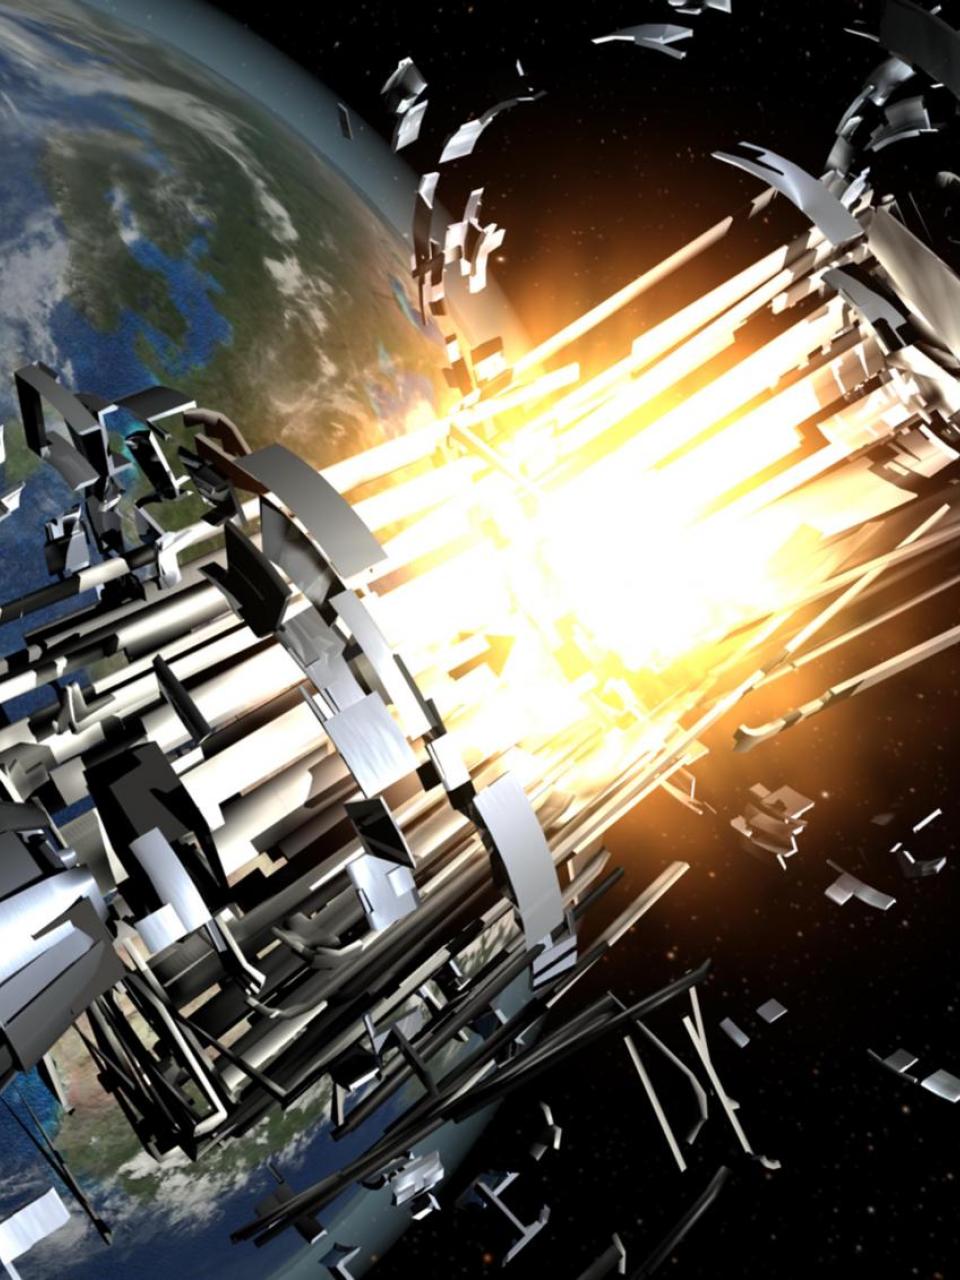 Esplosione del corpo del razzo: oltre alle collisioni tra satelliti, l’ambiente spaziale può causare anche il deterioramento dell’integrità delle componenti meccaniche dei razzi. L’usura che ne deriva può provocare un’autocombustione o un’esplosione in mille frantumi. (ESA) Remove Debris 3: a 2000 chilometri di altezza, nello spazio fluttuano oltre 7600 tonnellate di detriti spaziali sull’orbita terrestre o nelle sue vicinanze. 